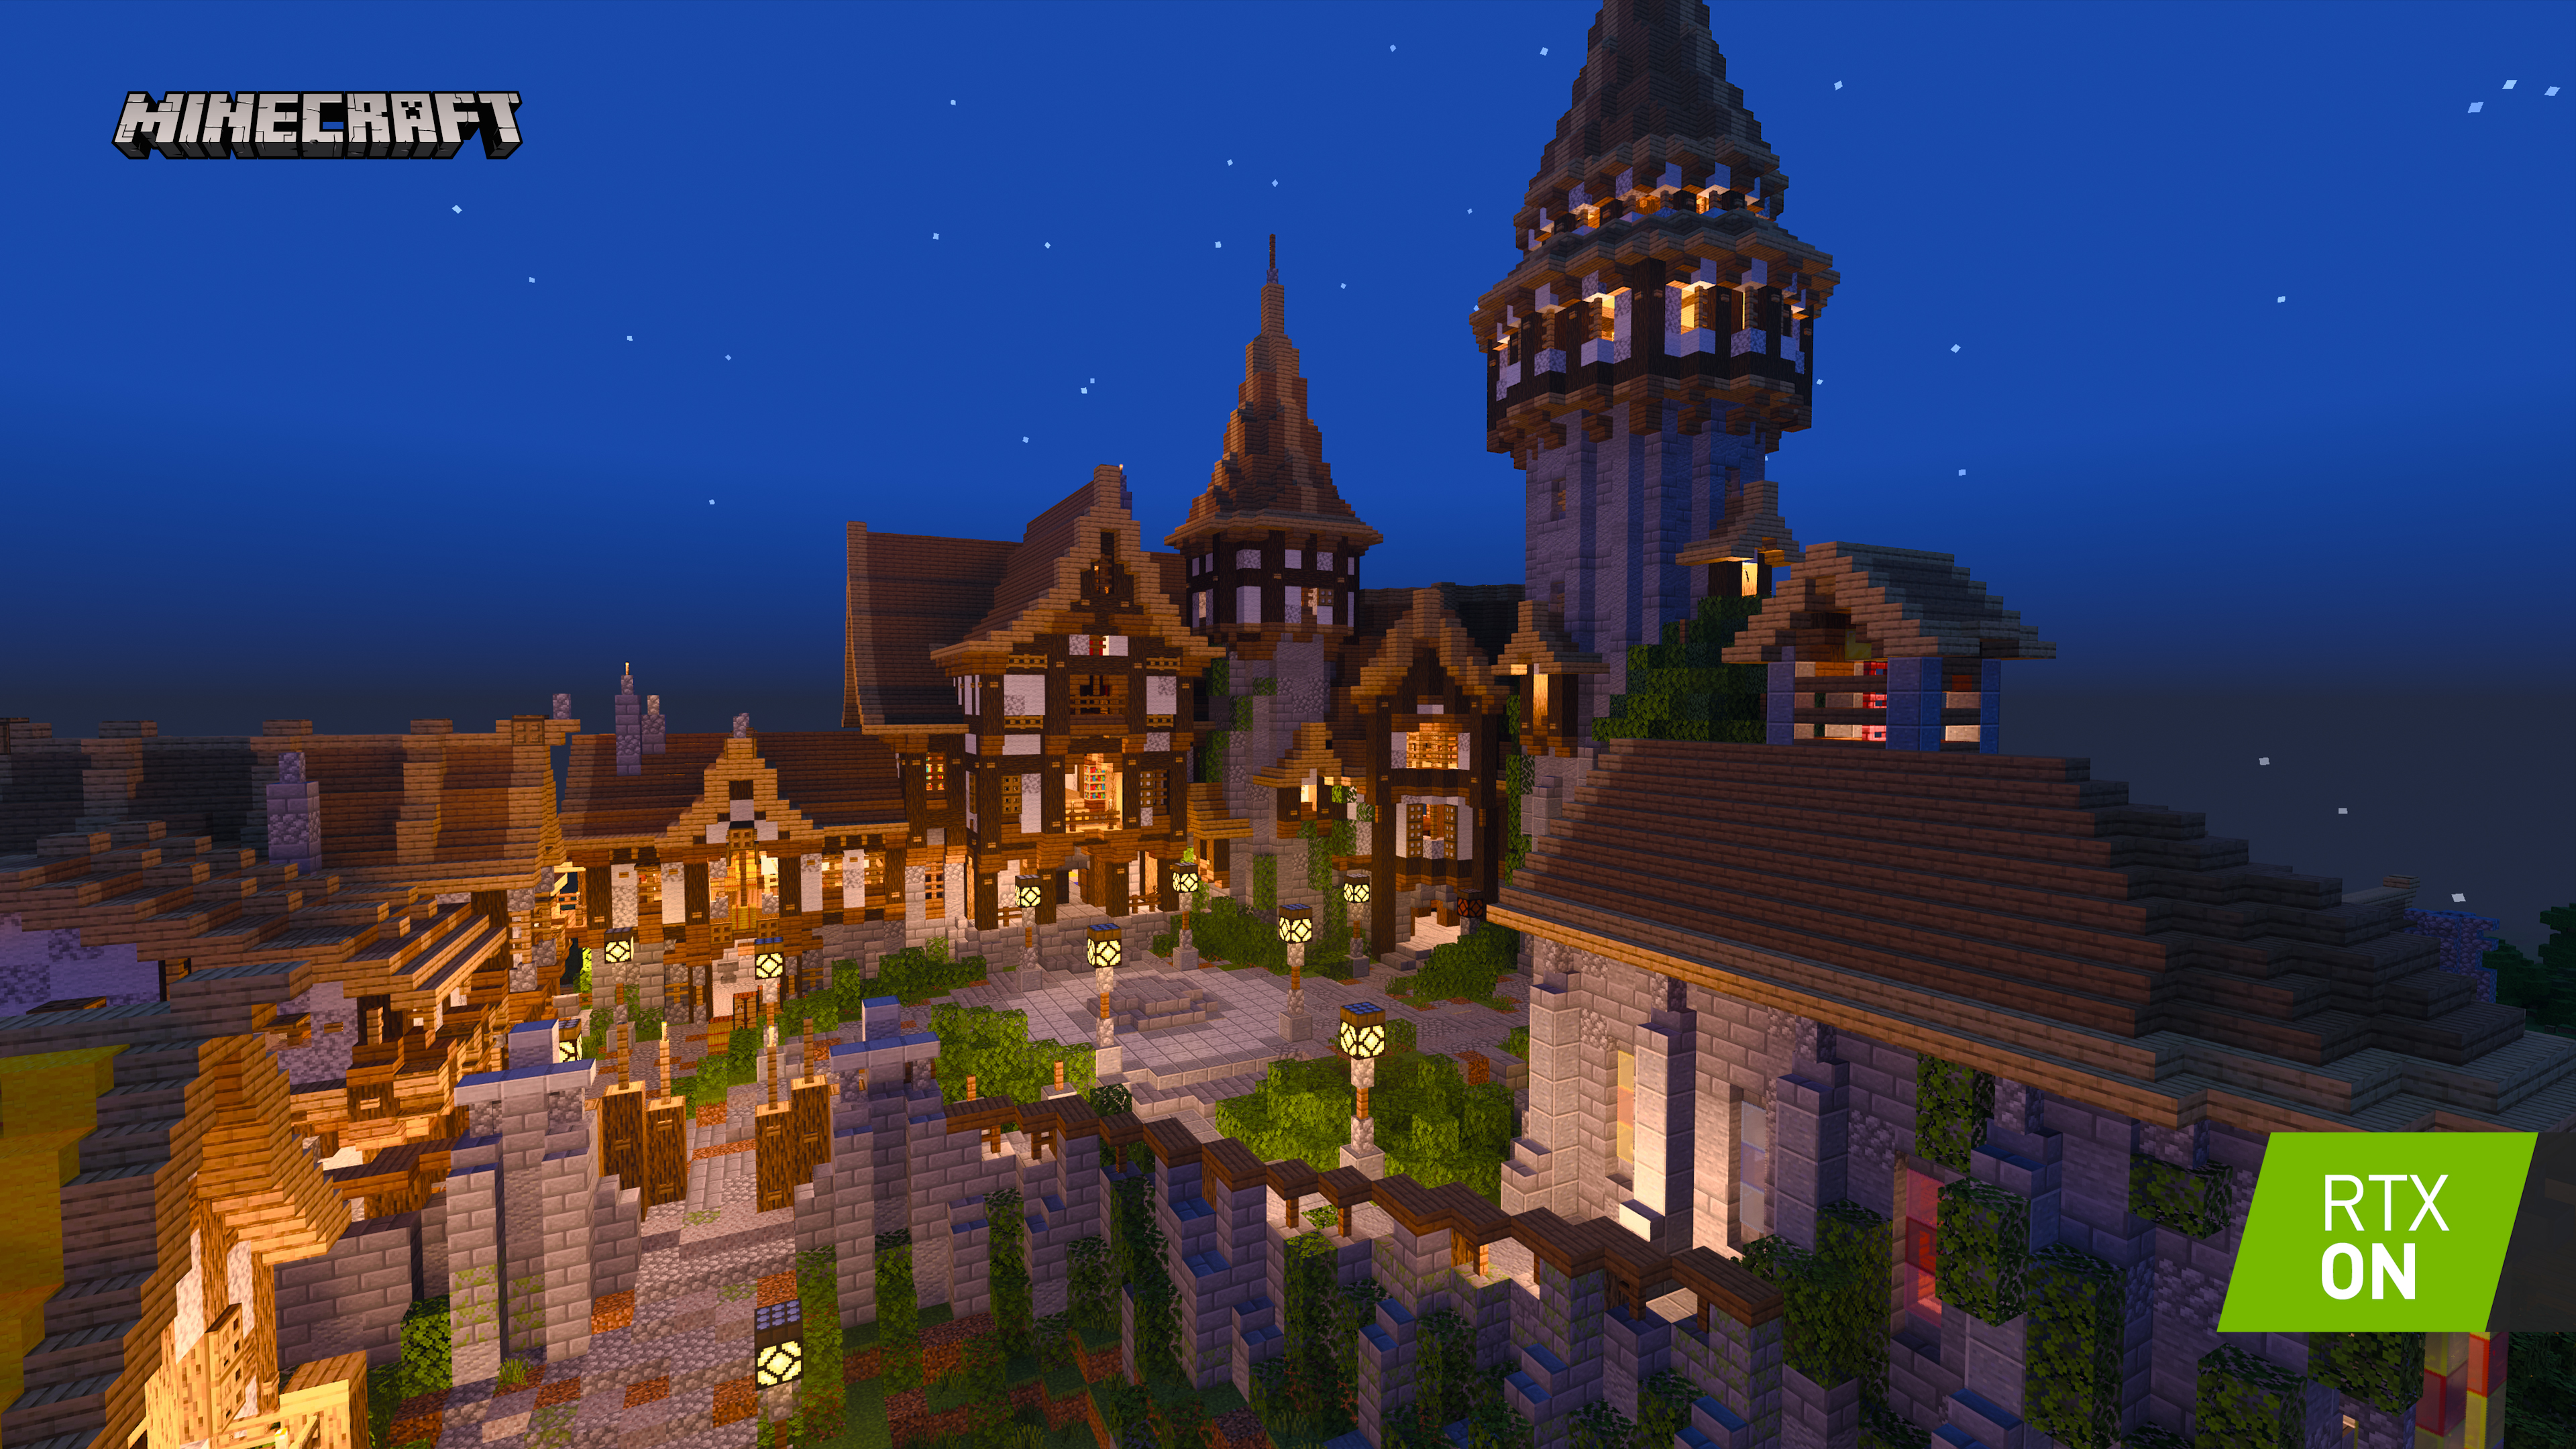 我的世界 Minecraft Windows 10 Rtx Beta版 免费下载5 个由创作者制作的新世界